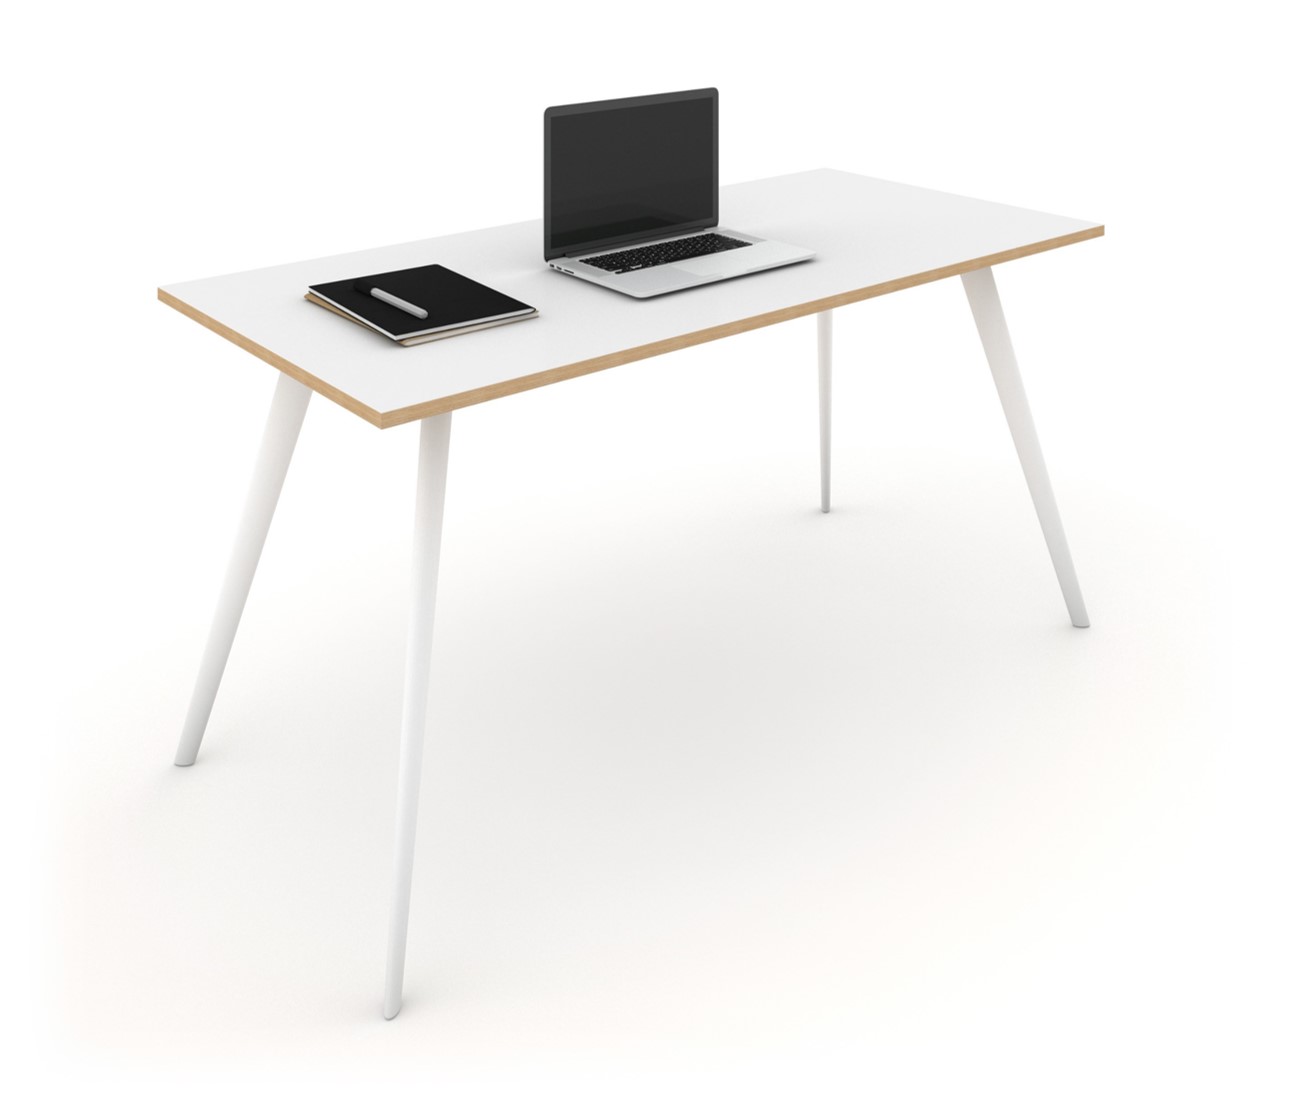 WS - Air desk - White legs, White ply edge